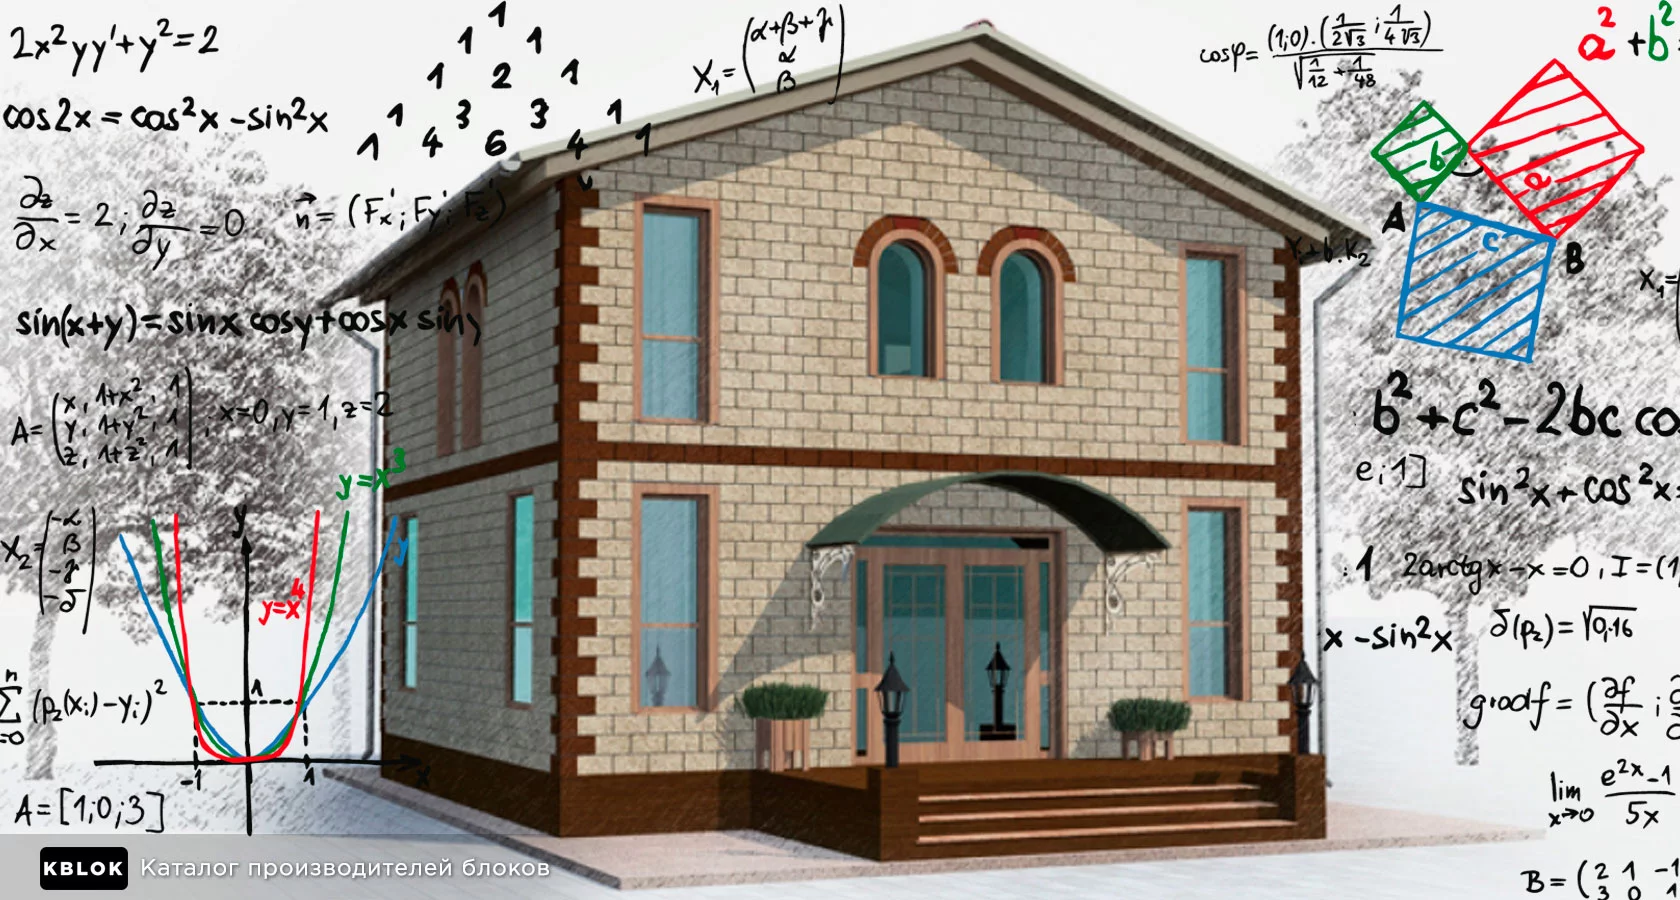 Онлайн-калькулятор расчета стоимости строительства дома| работы под ключ в Москве ГК «СВС»